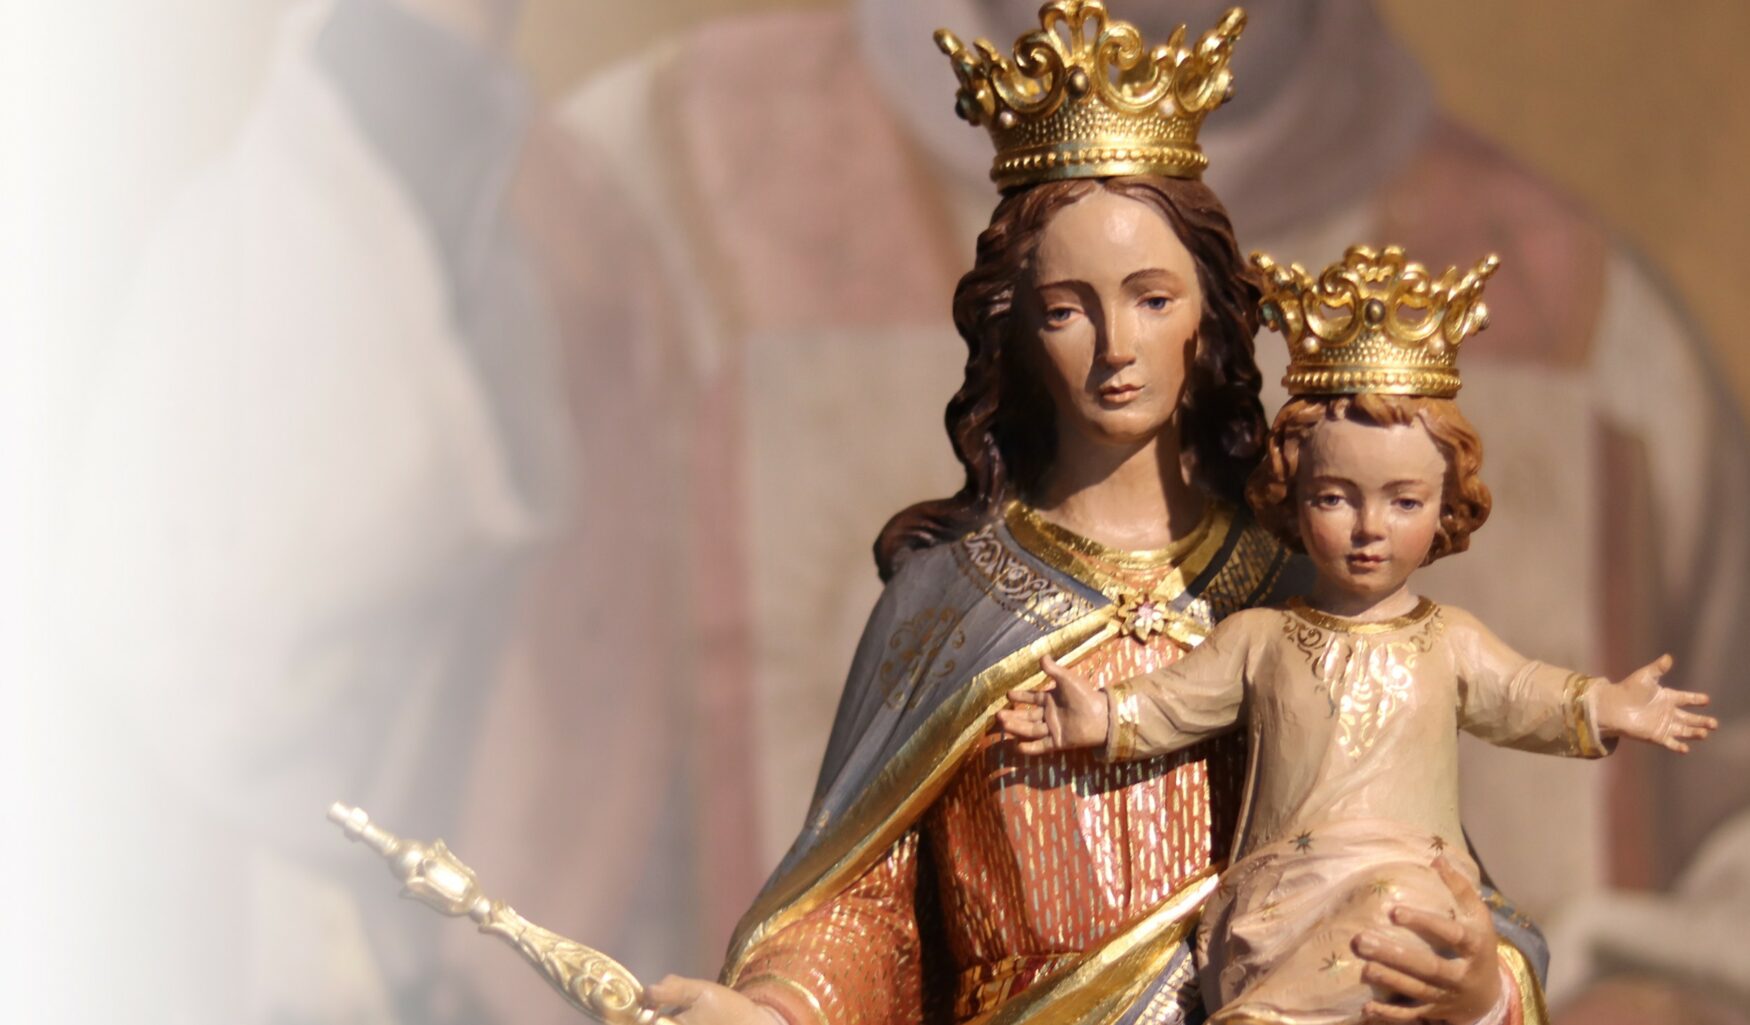 Dettaglio di statua in legno di Madonna con Bambino di Ferdinand Stuflesser